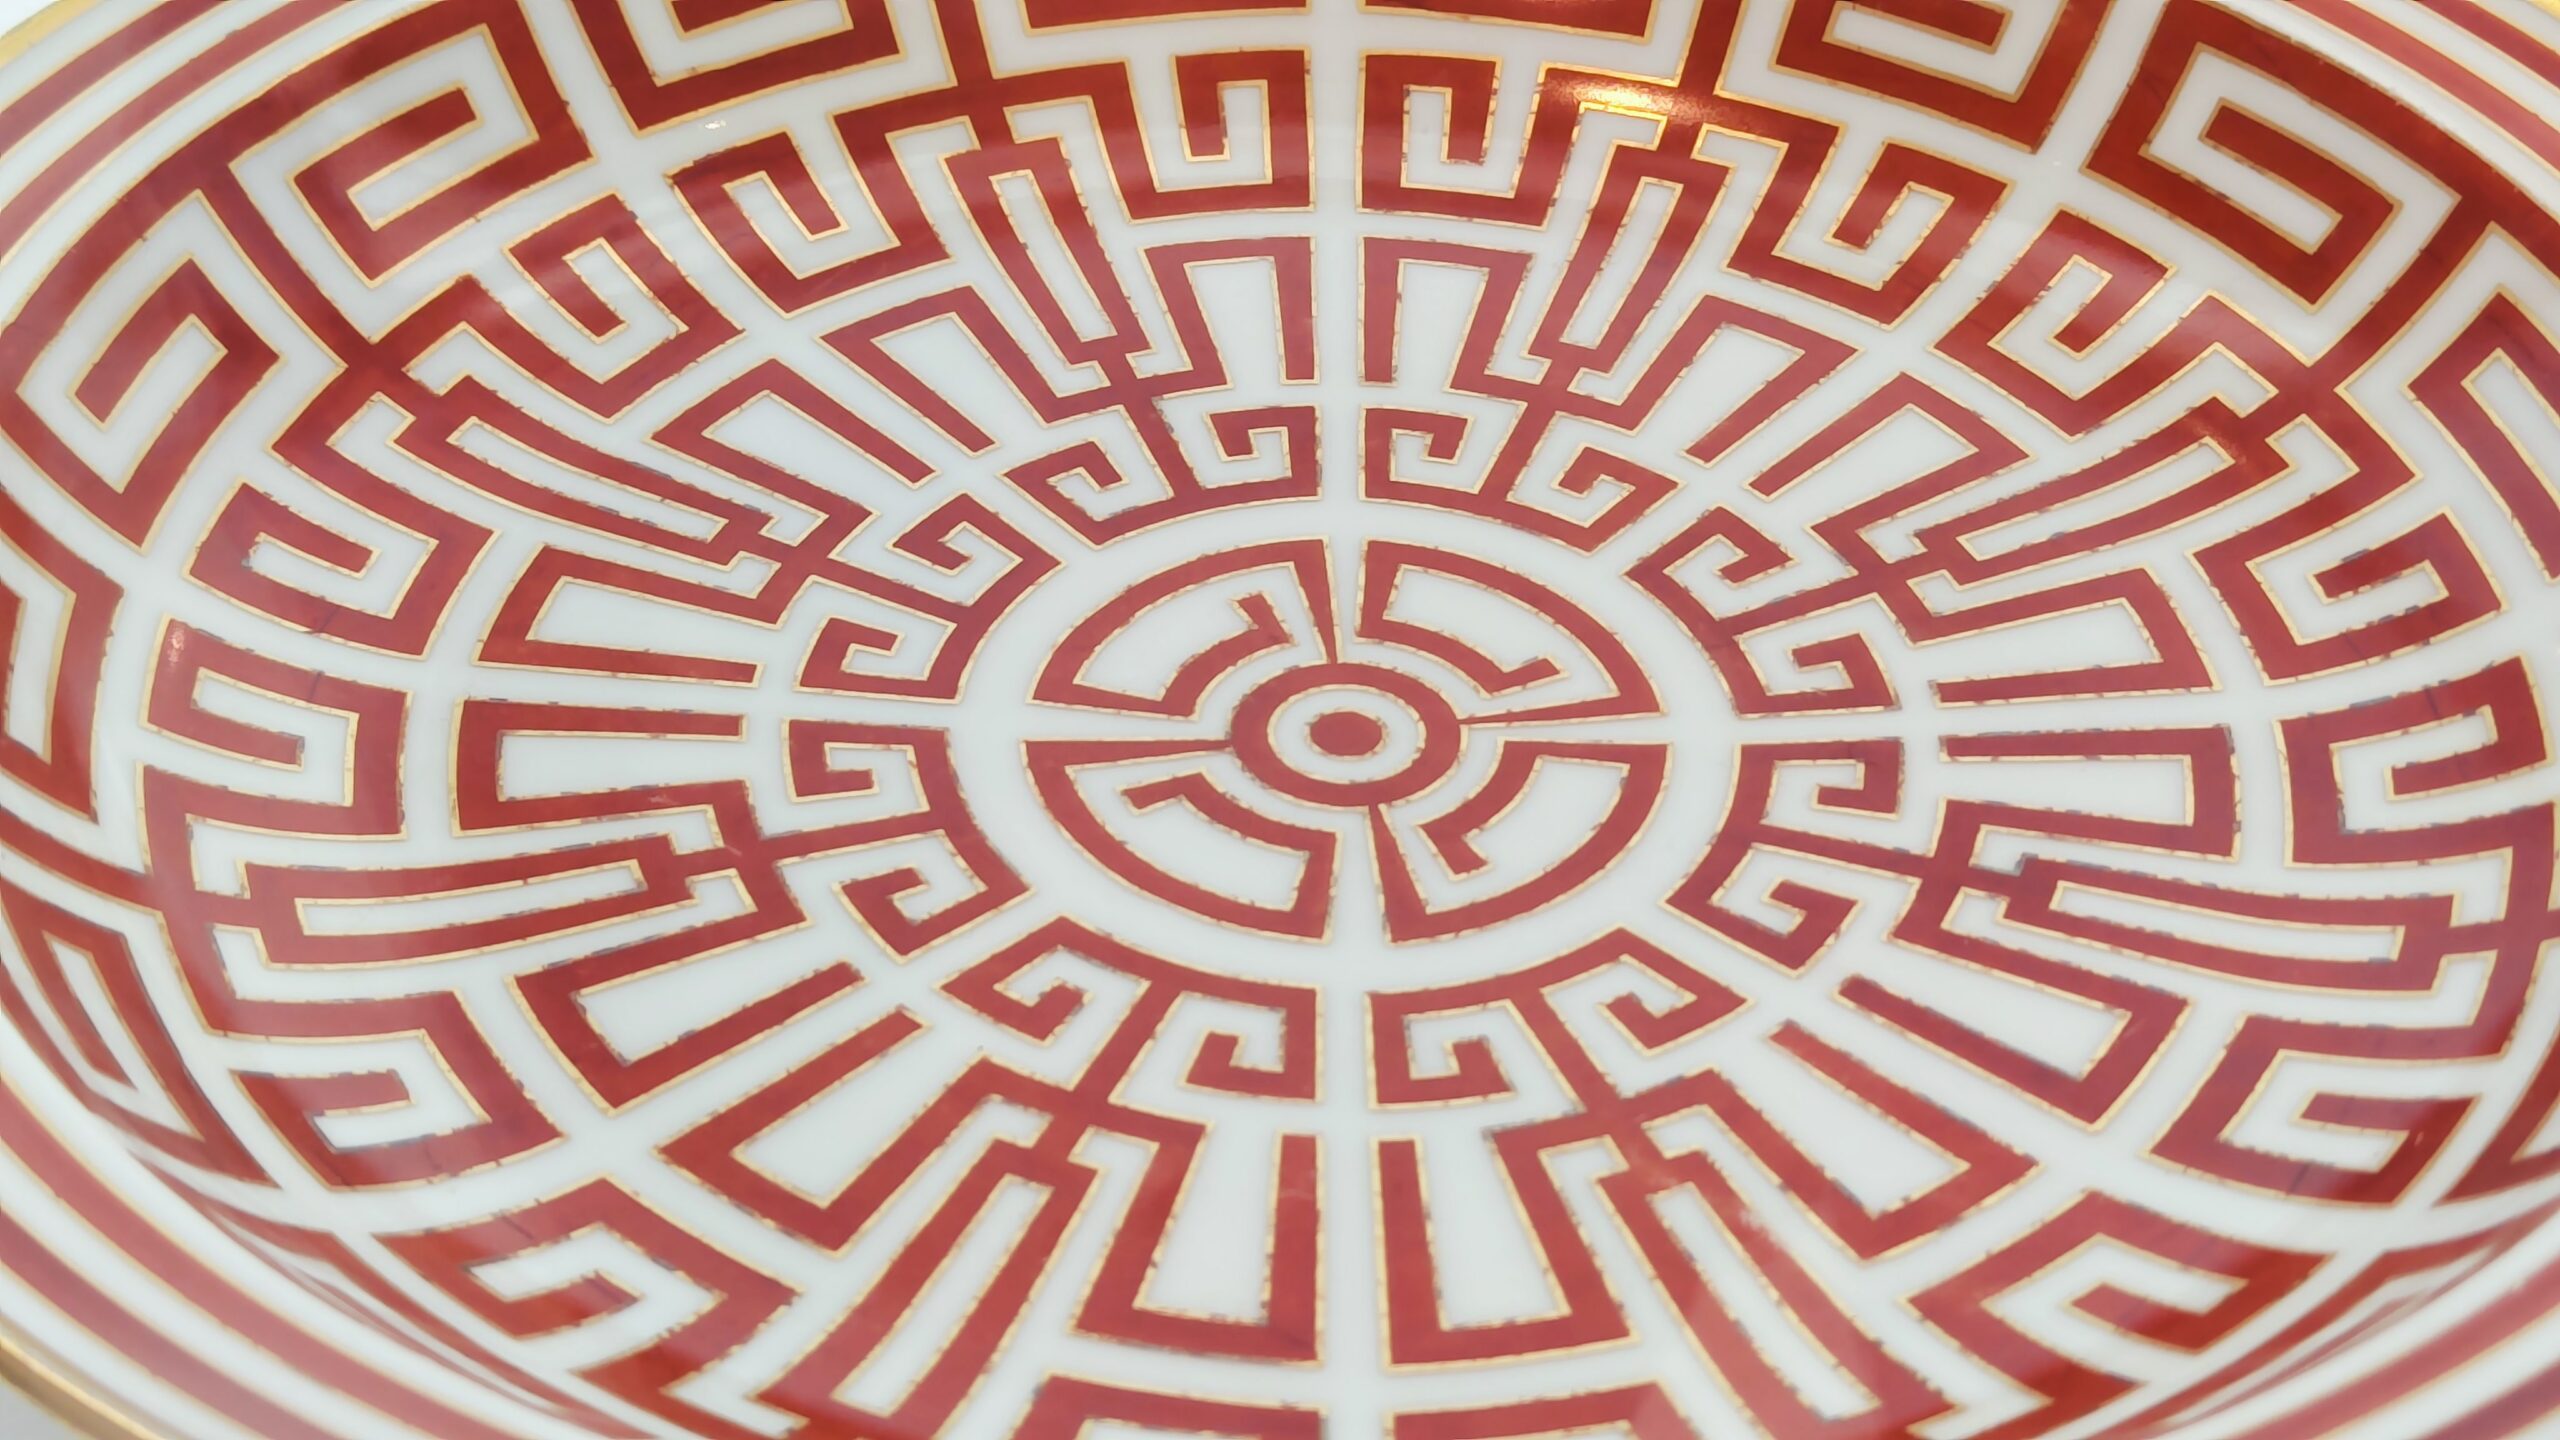 Particolare-Piatto-Gio-Ponti-decorato-con-labirintesca-1926